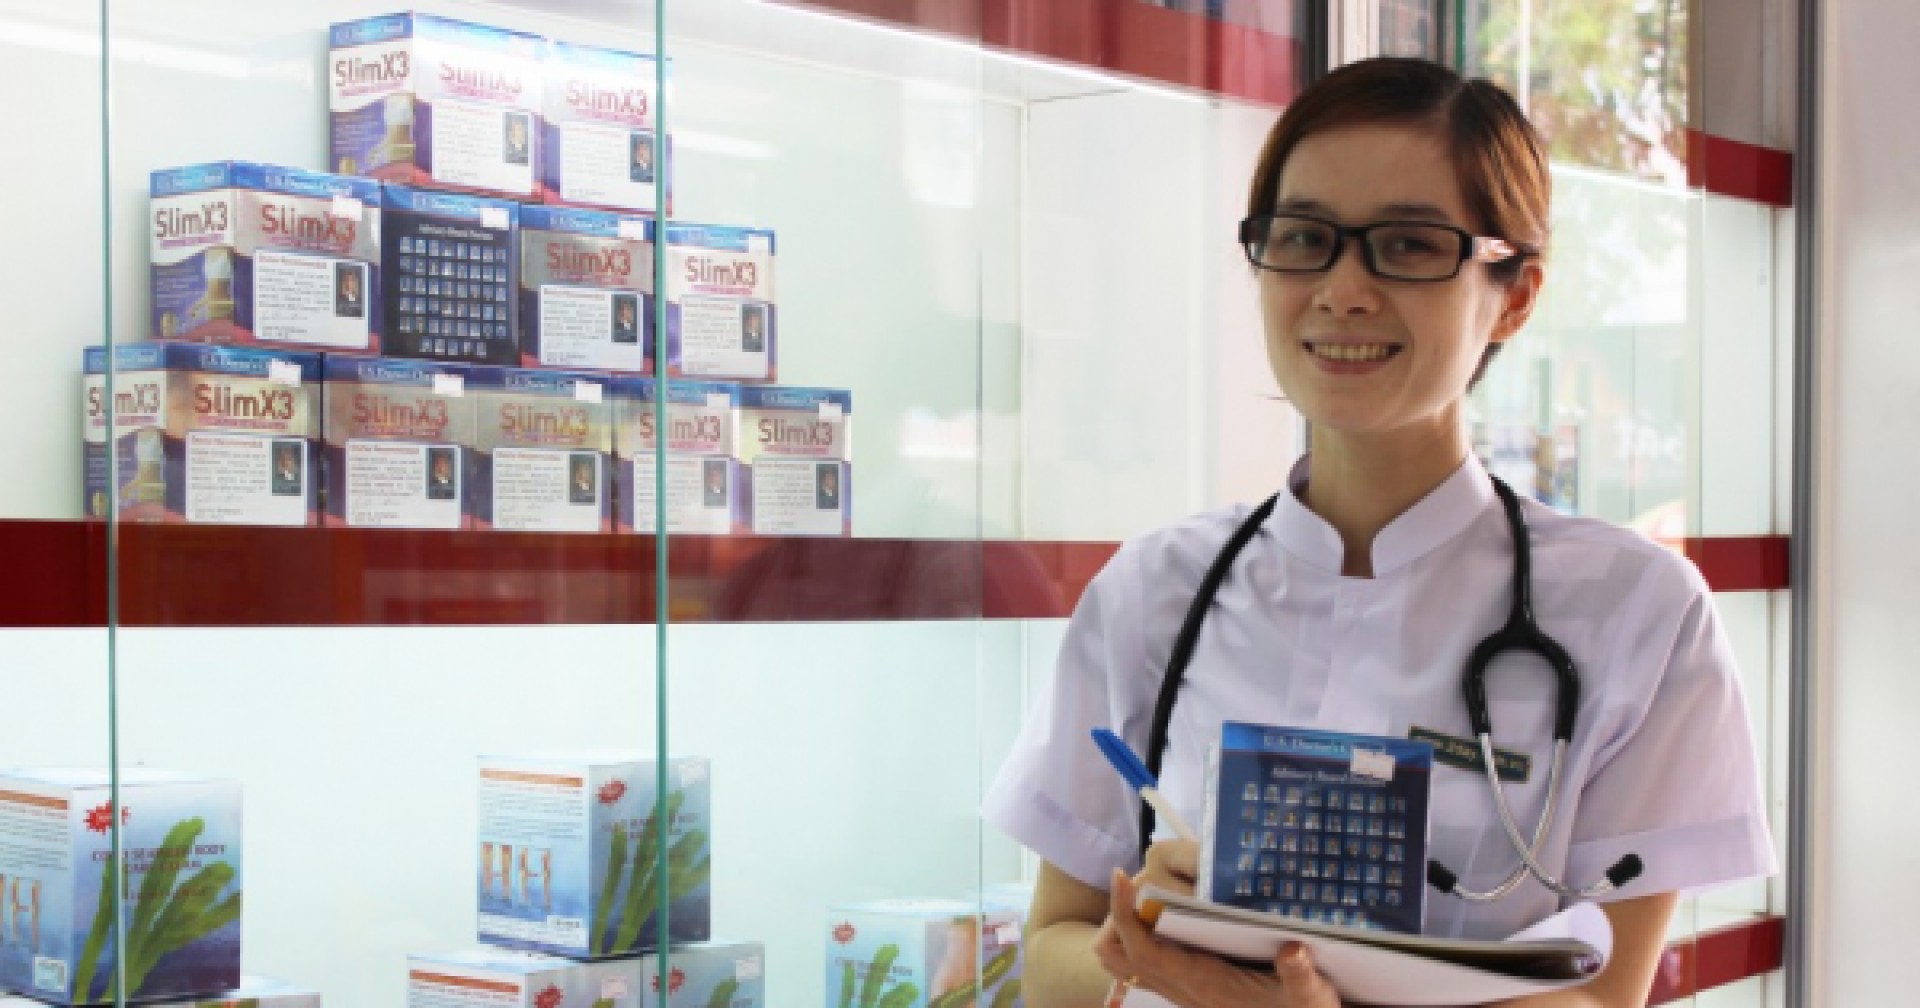 [TP HCM] Hệ thống nhà thuốc tây Long Châu tuyển dụng nhân viên bán thuốc tây  